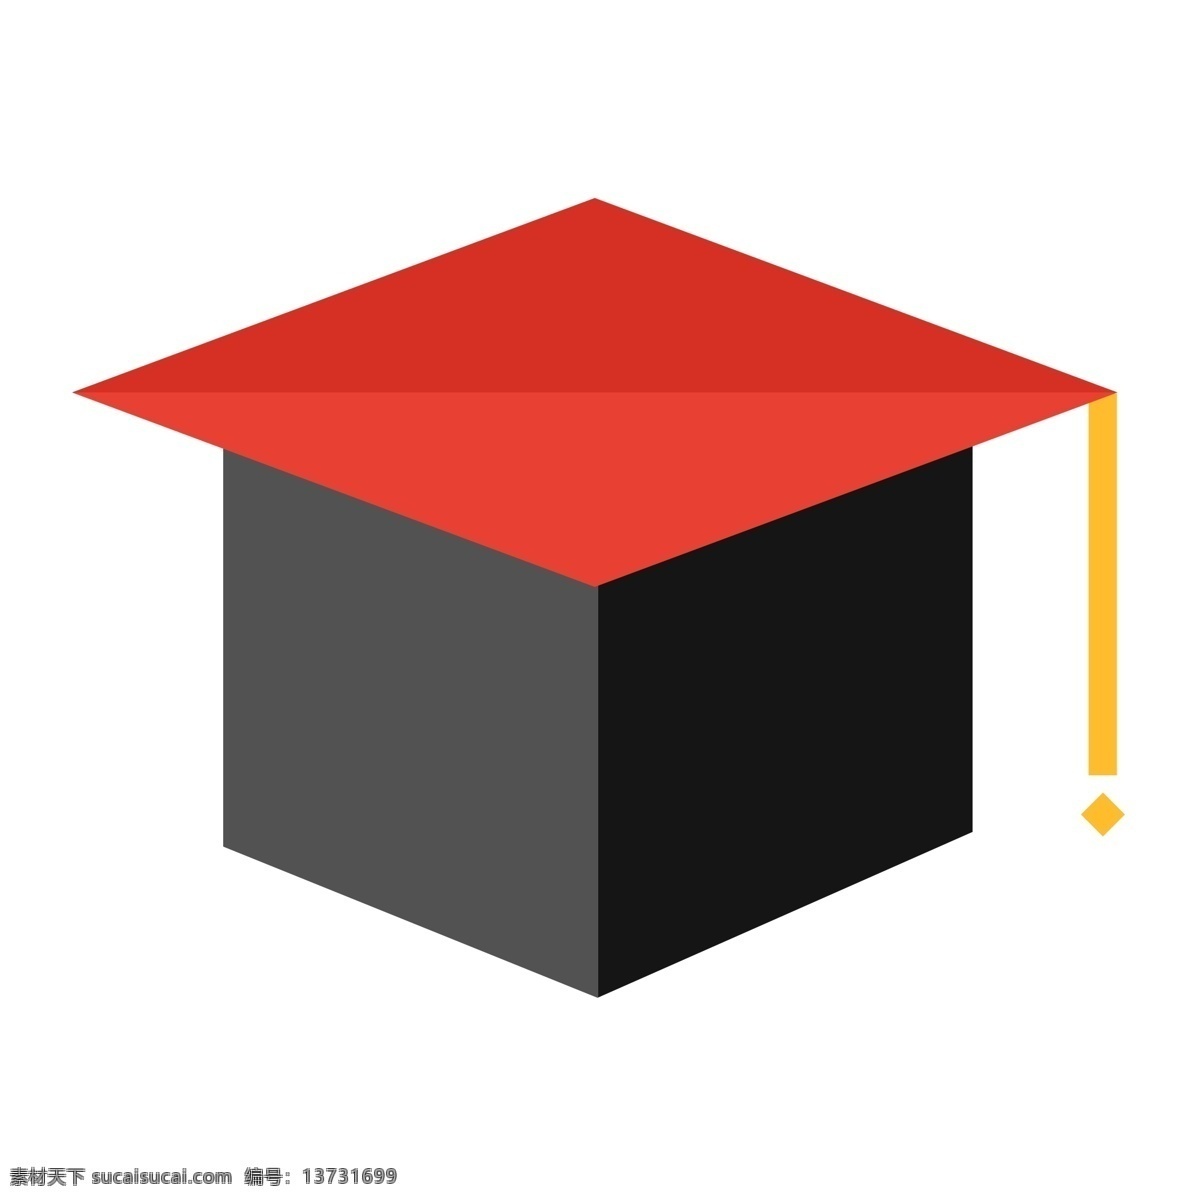 红 黑色 毕业 帽子 教育背景 简历 毕业学校 学历的等级 大学毕业 自己 感到 骄傲